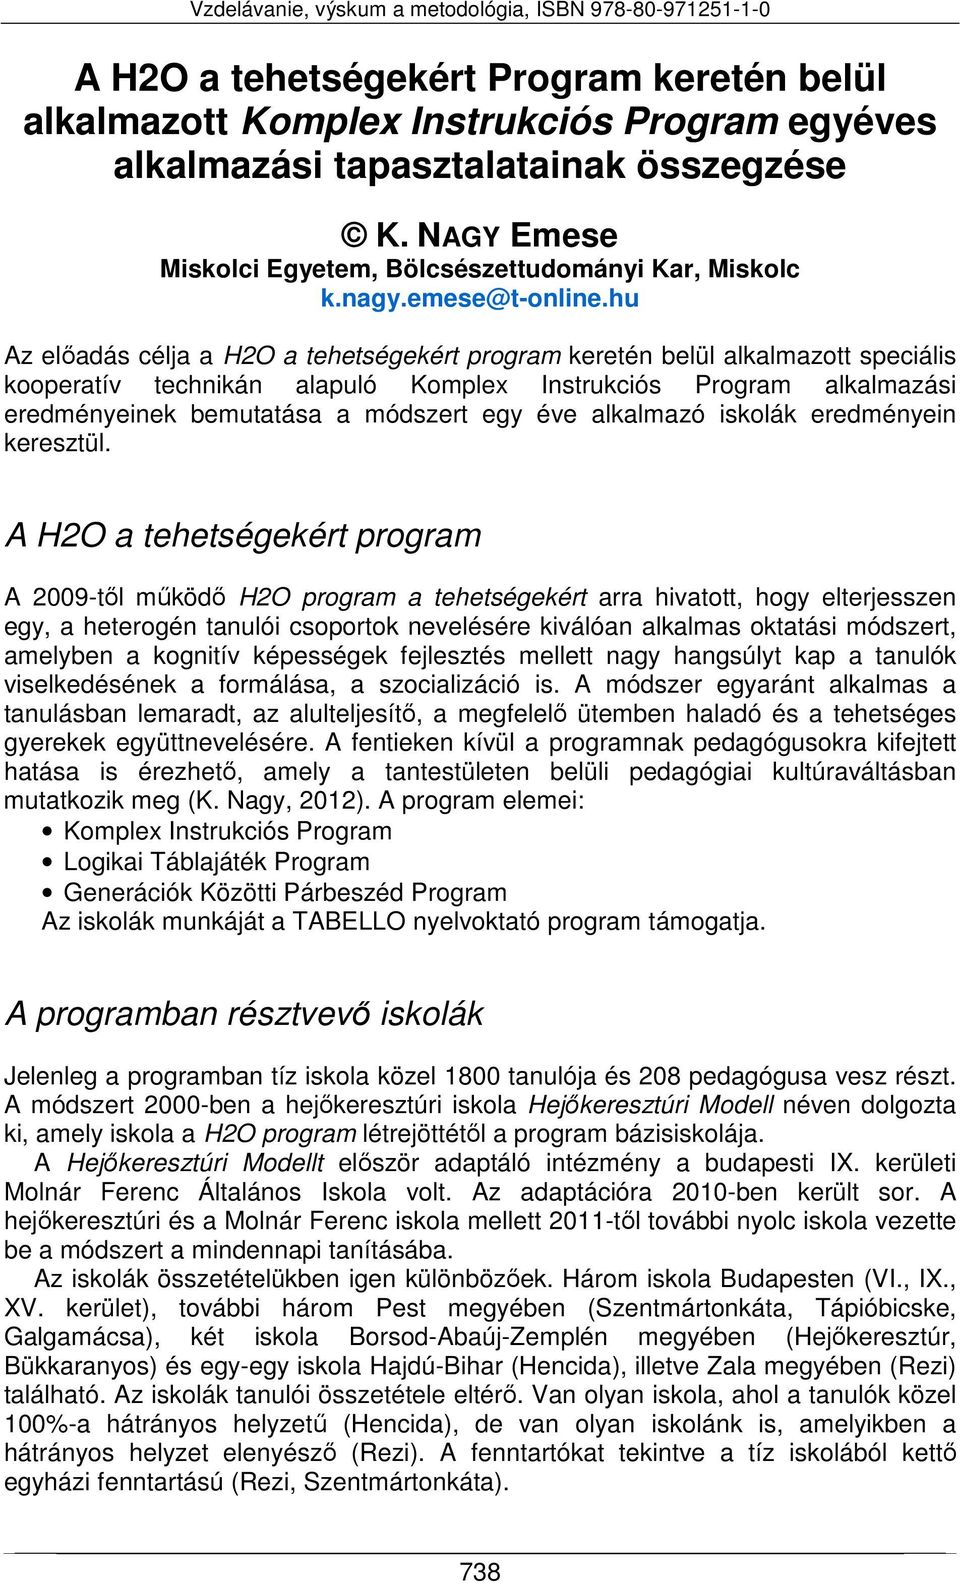 hu Az előadás célja a H2O a tehetségekért program keretén belül alkalmazott speciális kooperatív technikán alapuló Komplex Instrukciós Program alkalmazási eredményeinek bemutatása a módszert egy éve